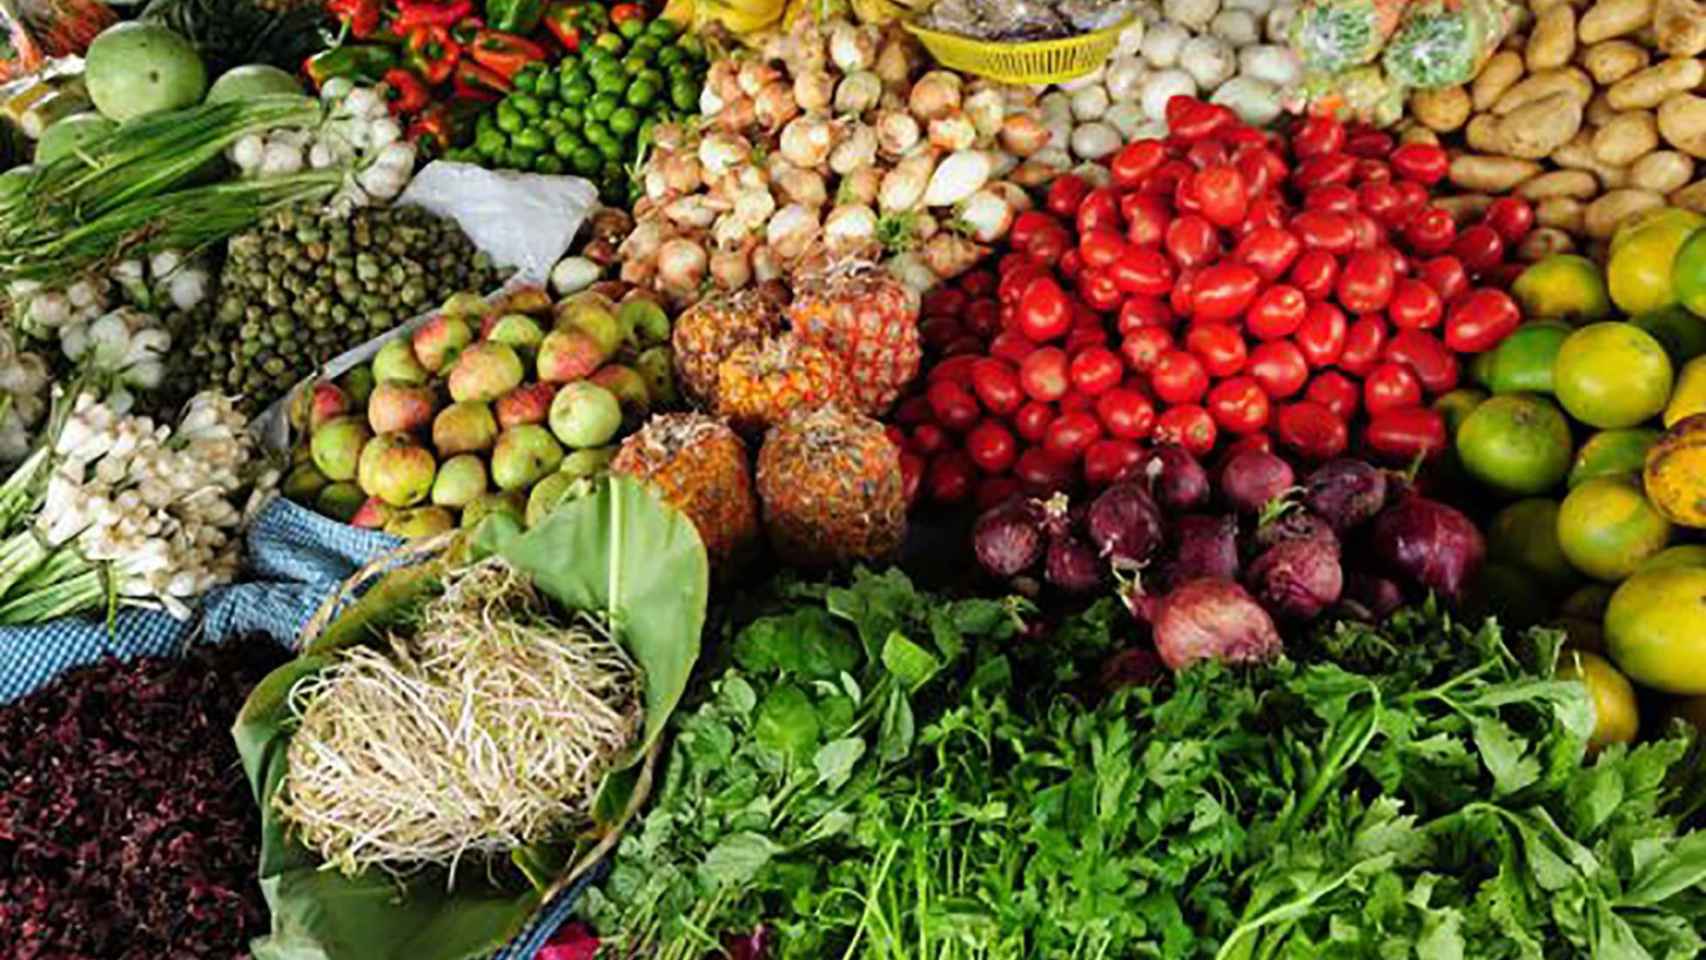 Frutas y verduras son los productos alimenticios más desechados